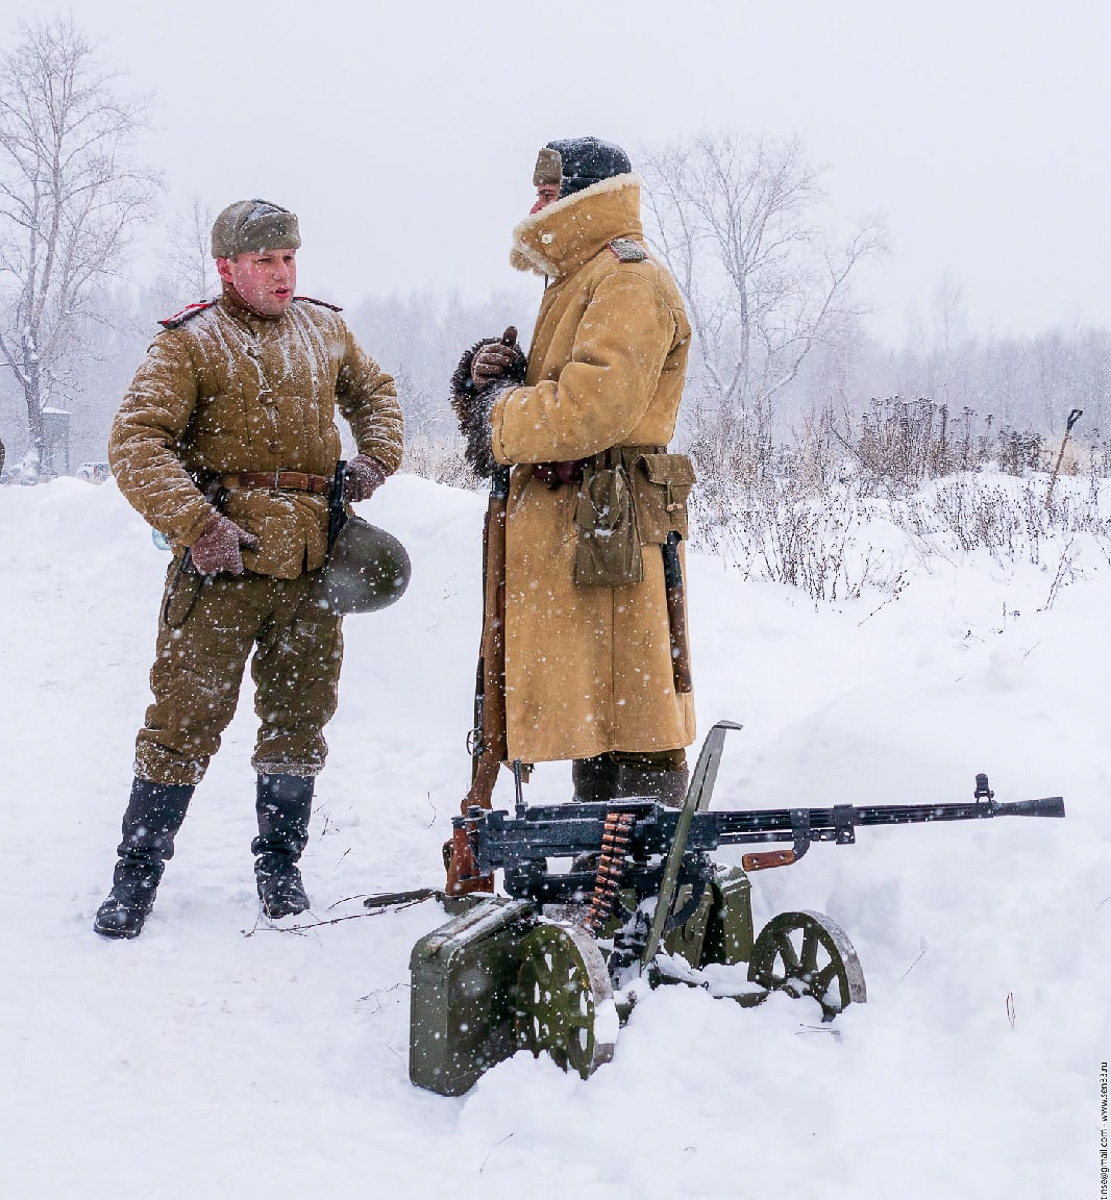 Участники ковровского военно-патриотического проекта «Наследники победы» сняли мини-фильм о тактических учениях подразделений Красной армии периода 1943 года.